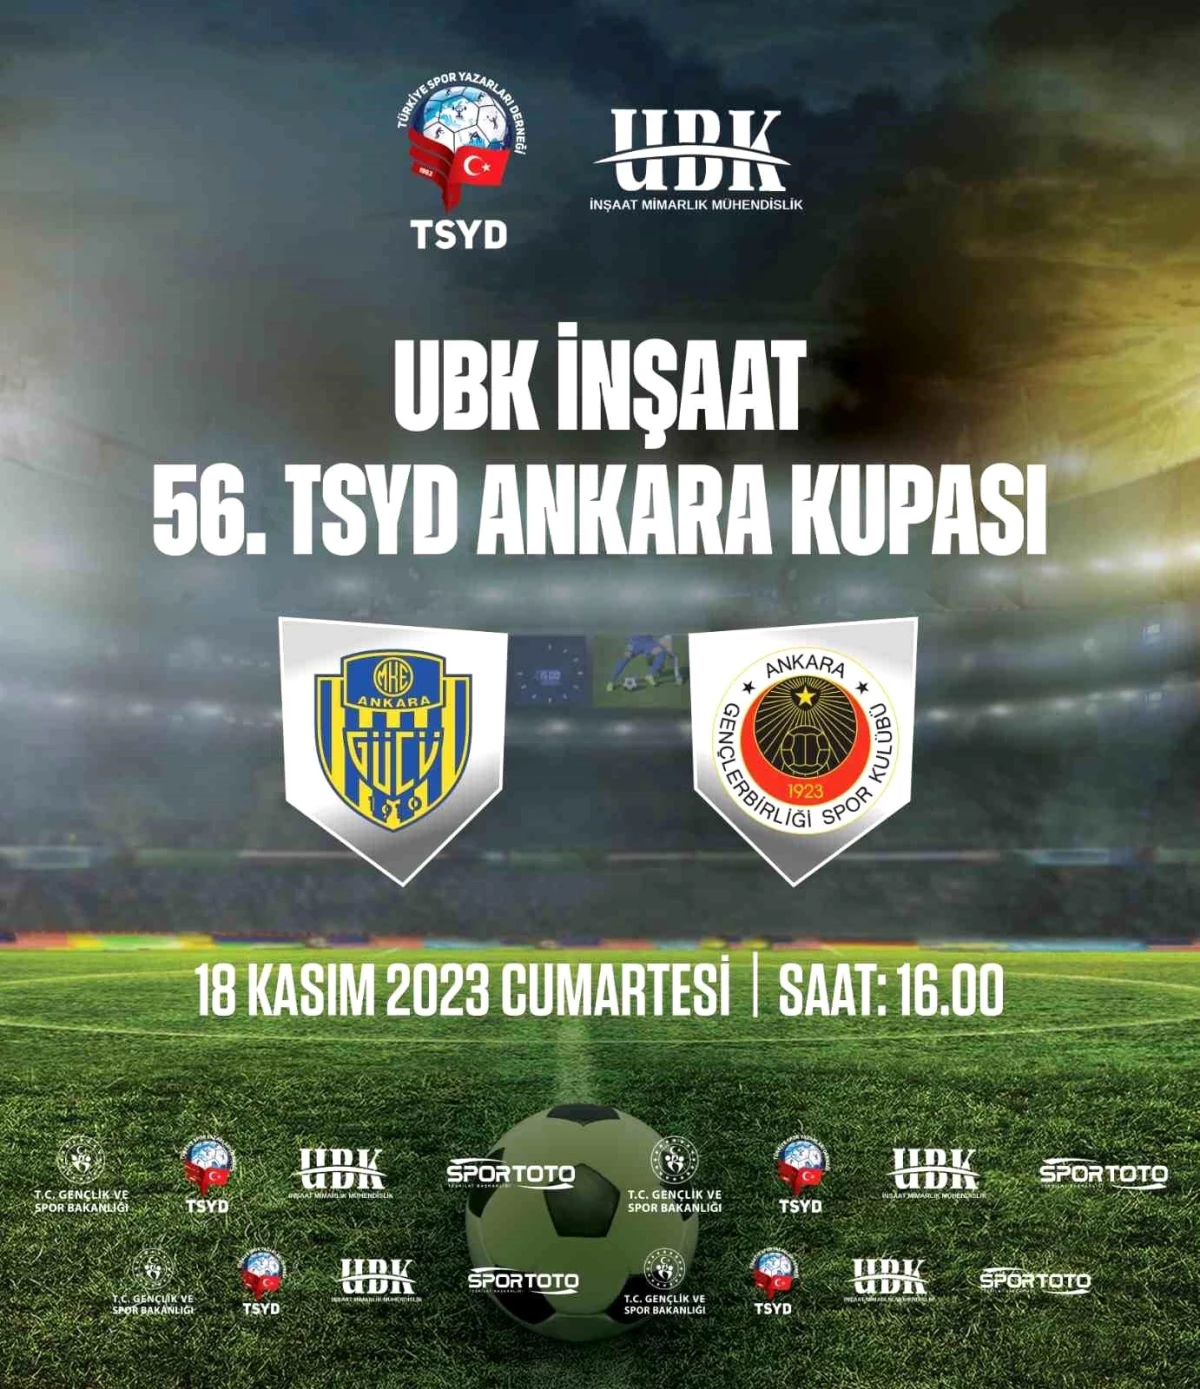 TSYD Ankara Şubesi Kupası MKE Ankaragücü ile Gençlerbirliği arasında oynanacak